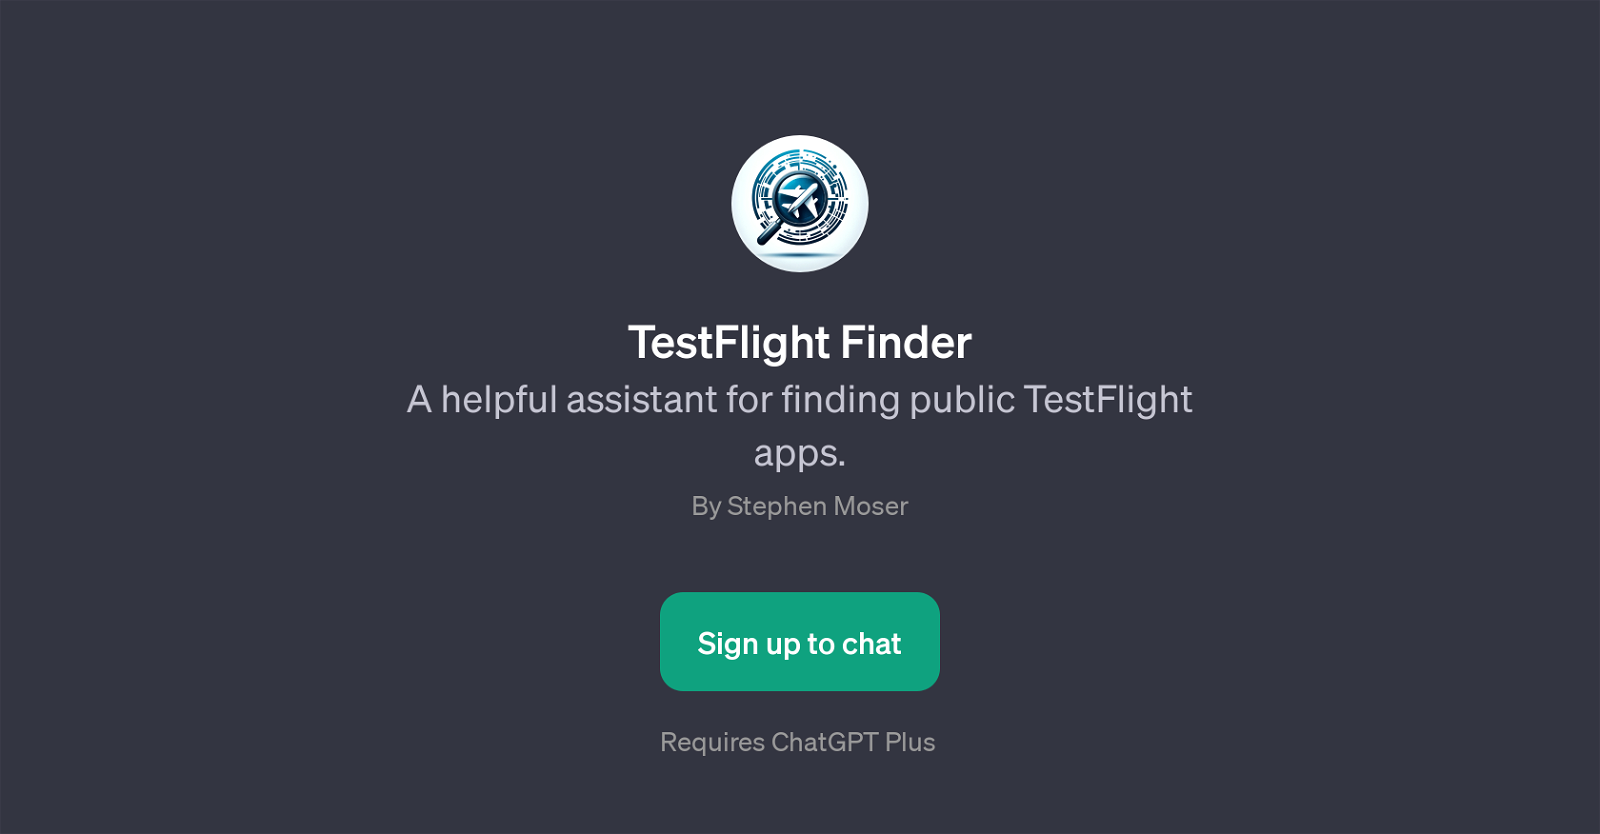 TestFlight Finder website